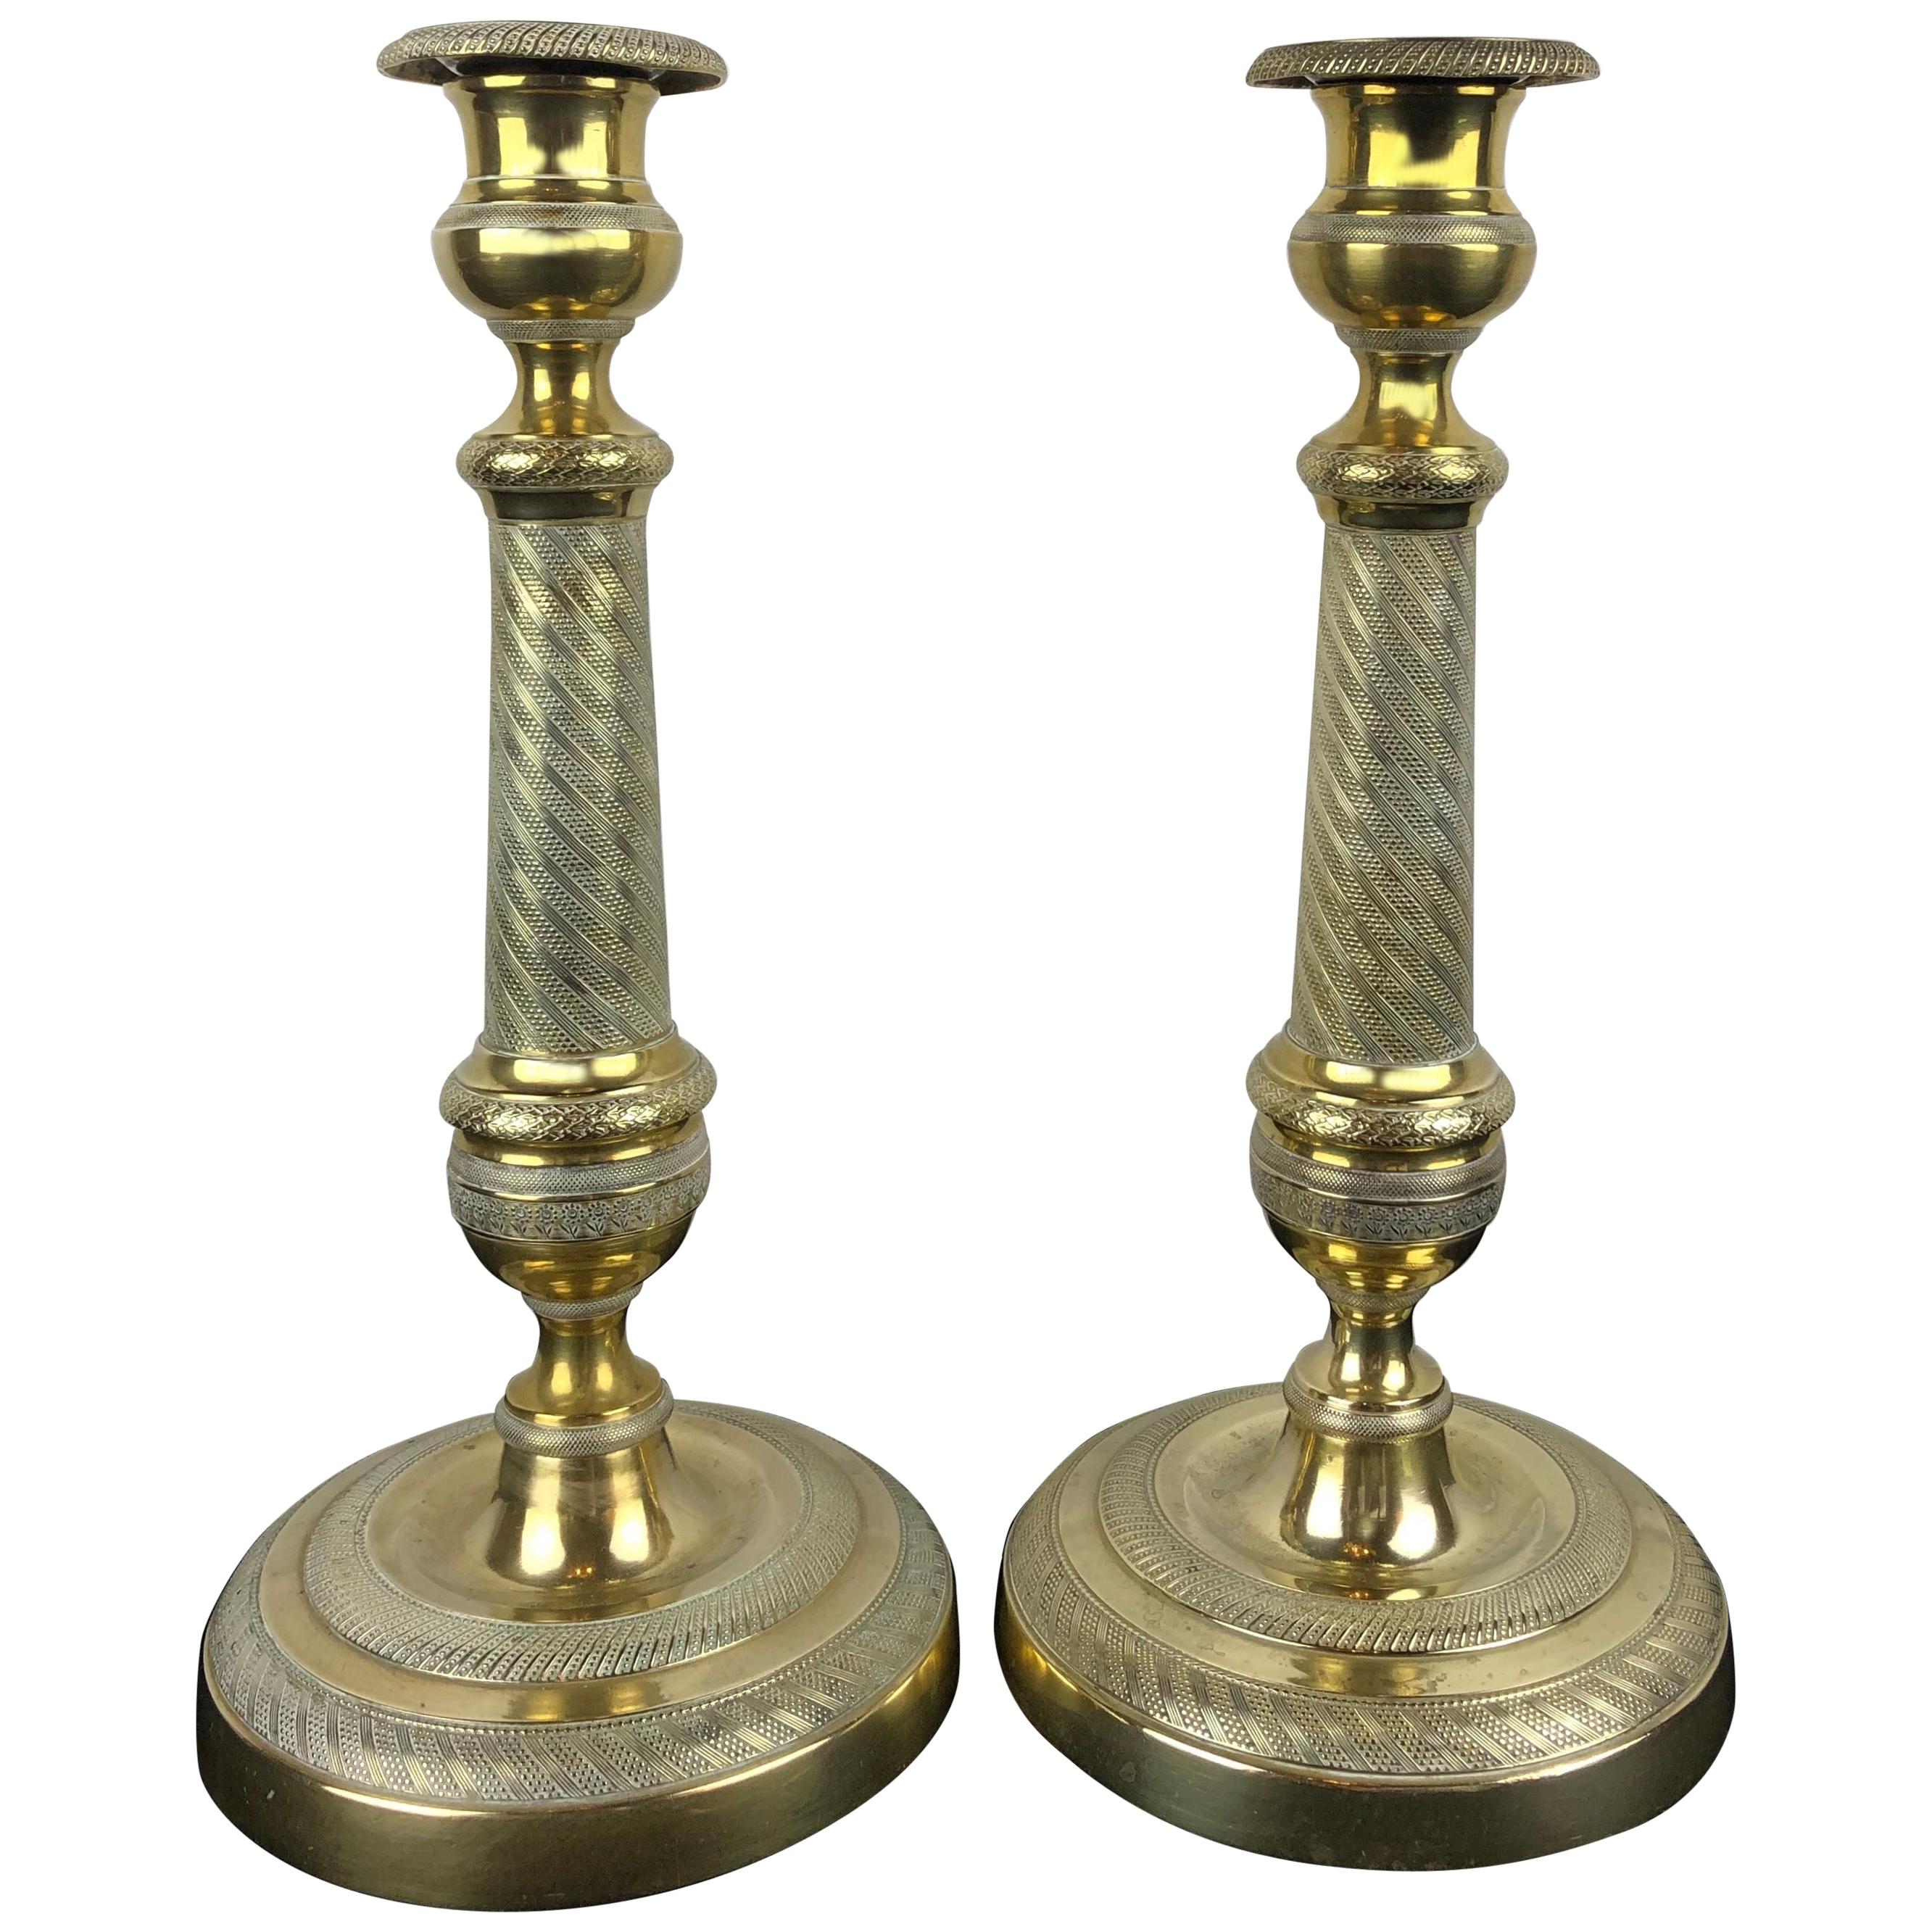 Paire de chandeliers Empire en bronze doré du début du 19ème siècle